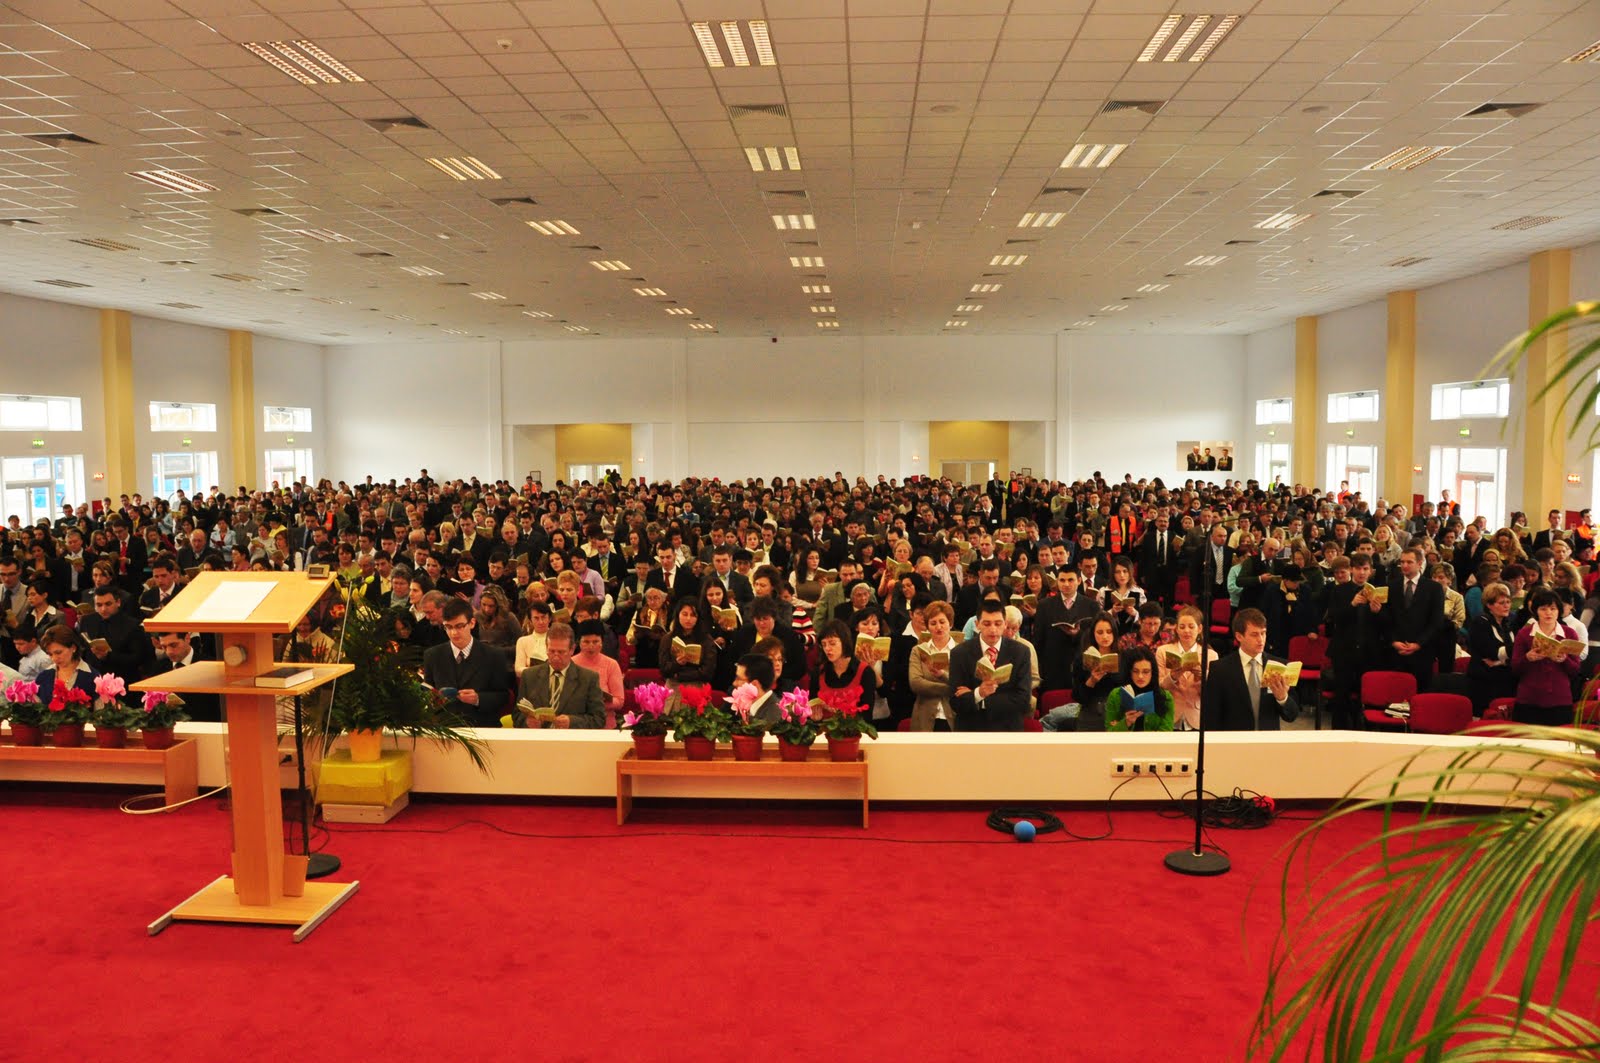 Congresul ,,Martorilor lui Iehova” va avea loc sambata si duminica la Timisoara la Centrul de Afaceri din Timișoara.